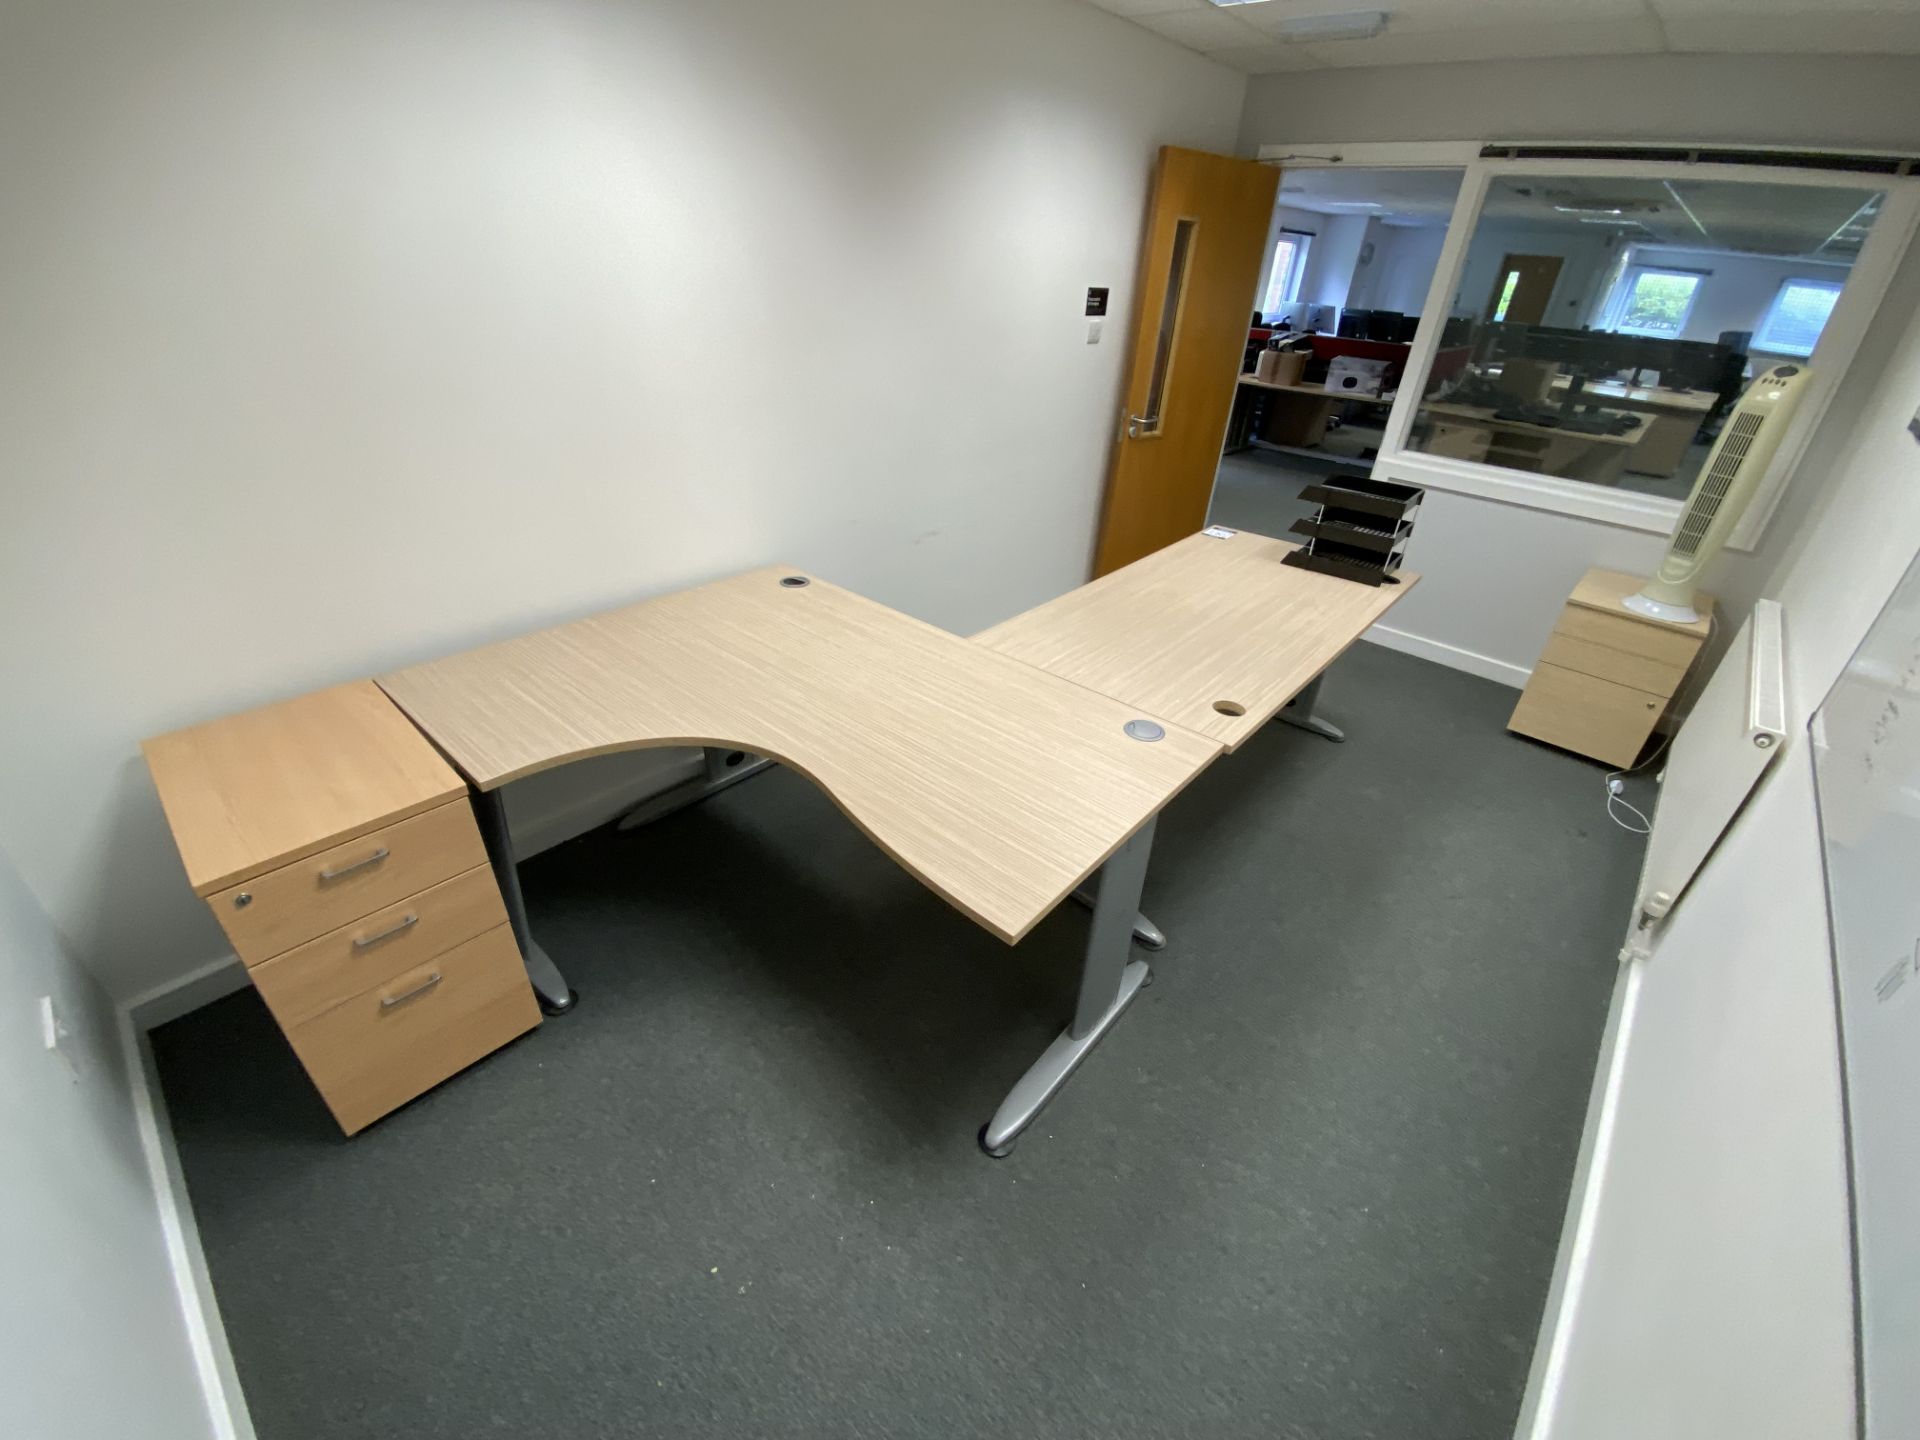 Lot comprisng: one corner desk, one rectangular desk & two 3 drawer high pedestals